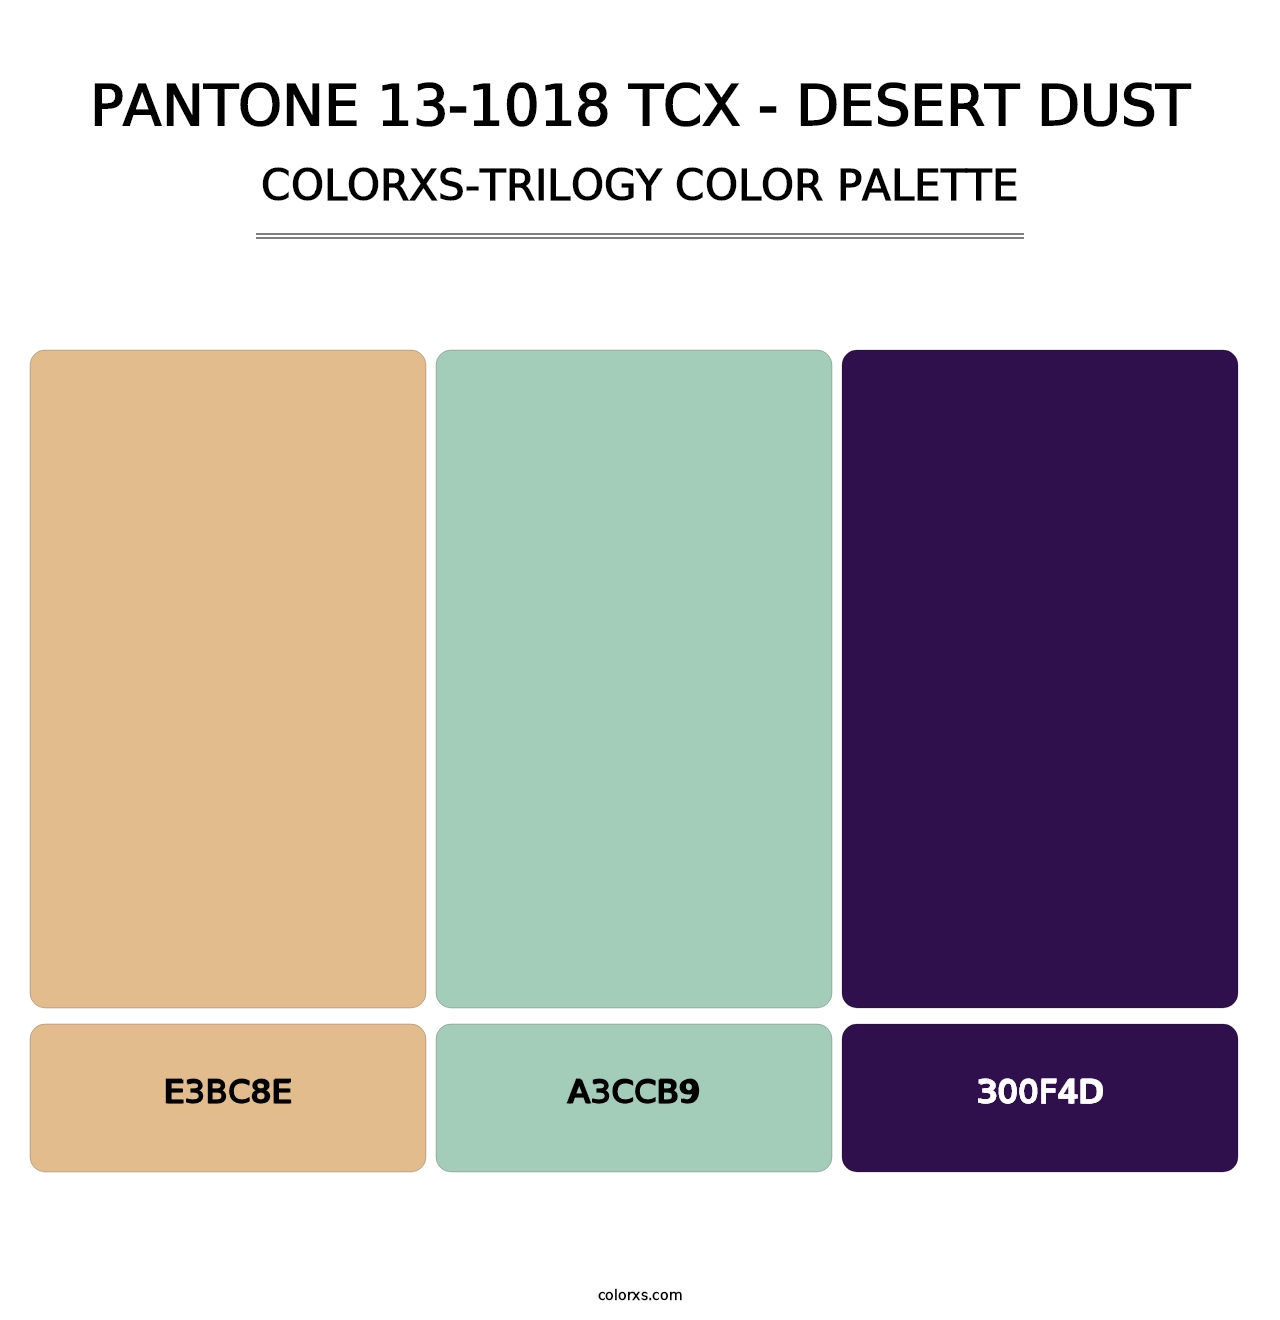 PANTONE 13-1018 TCX - Desert Dust - Colorxs Trilogy Palette